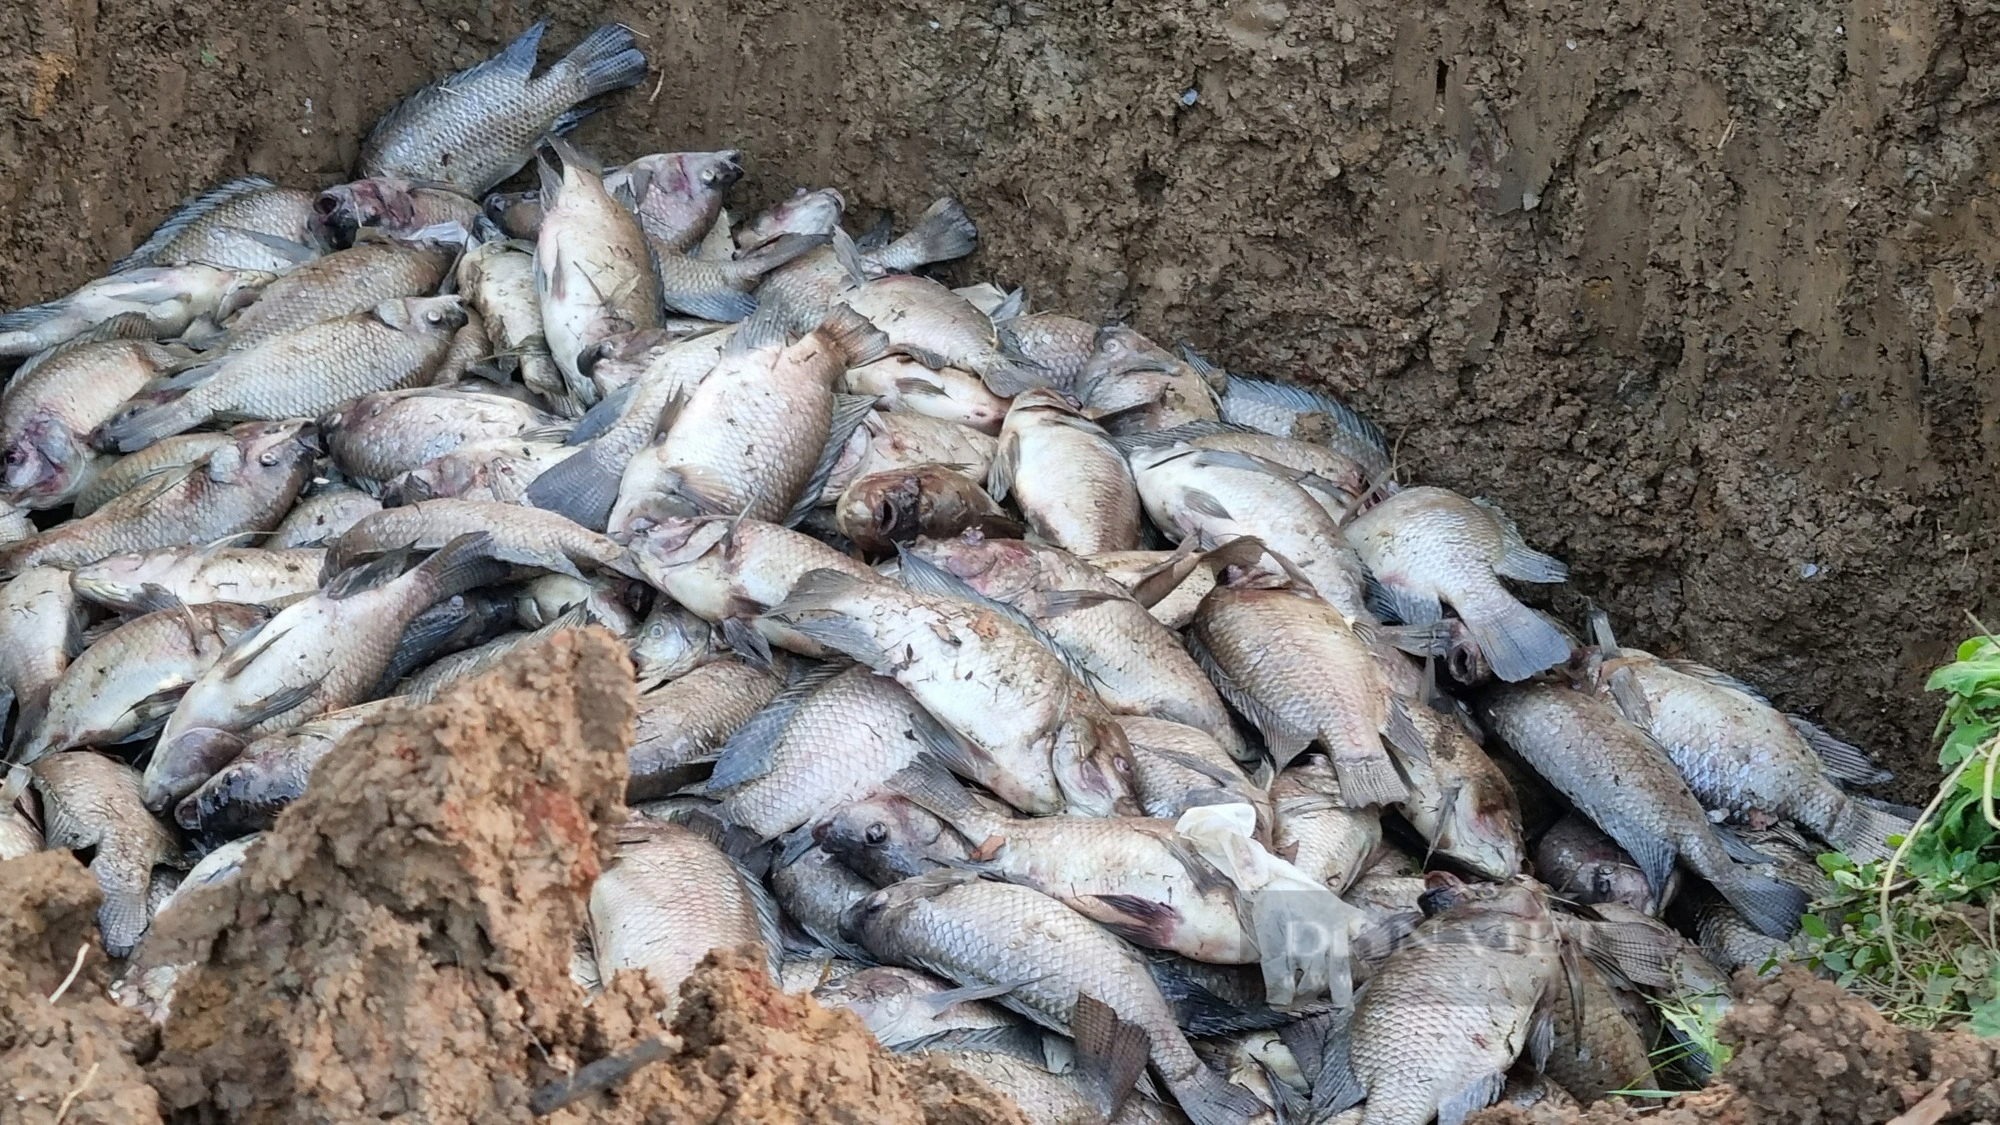 UBND huyện Mai Sơn (Sơn La) thông tin vụ cá chết hàng loạt sau phản ánh của Dân Việt - Ảnh 2.